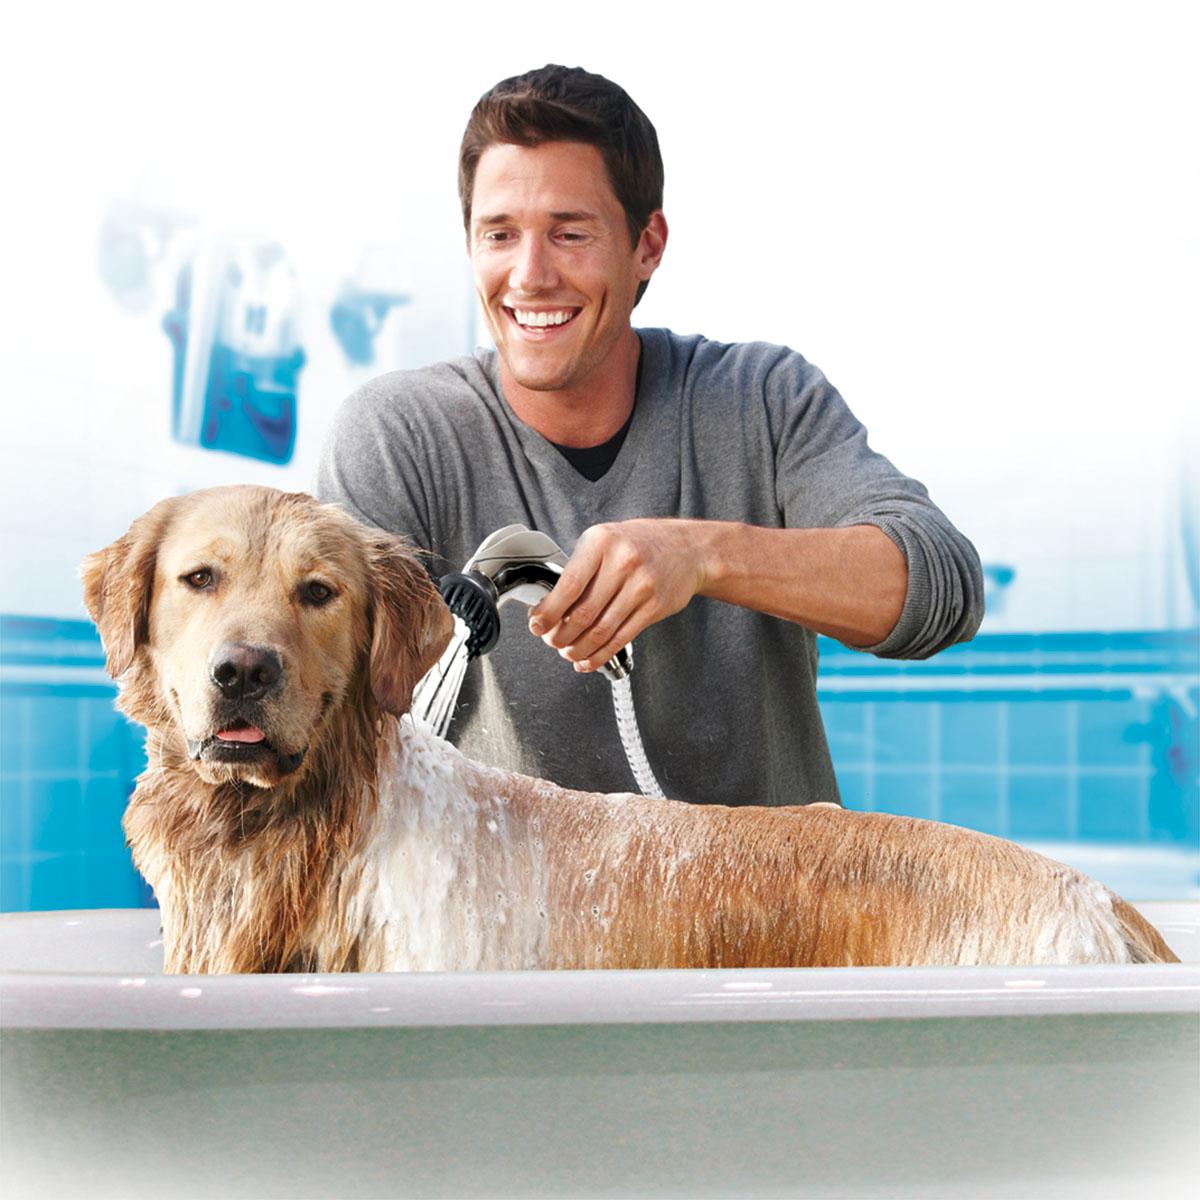 Mai usare lo shampoo e i saponi ad uso umano per fare il bagno a cani e gatti